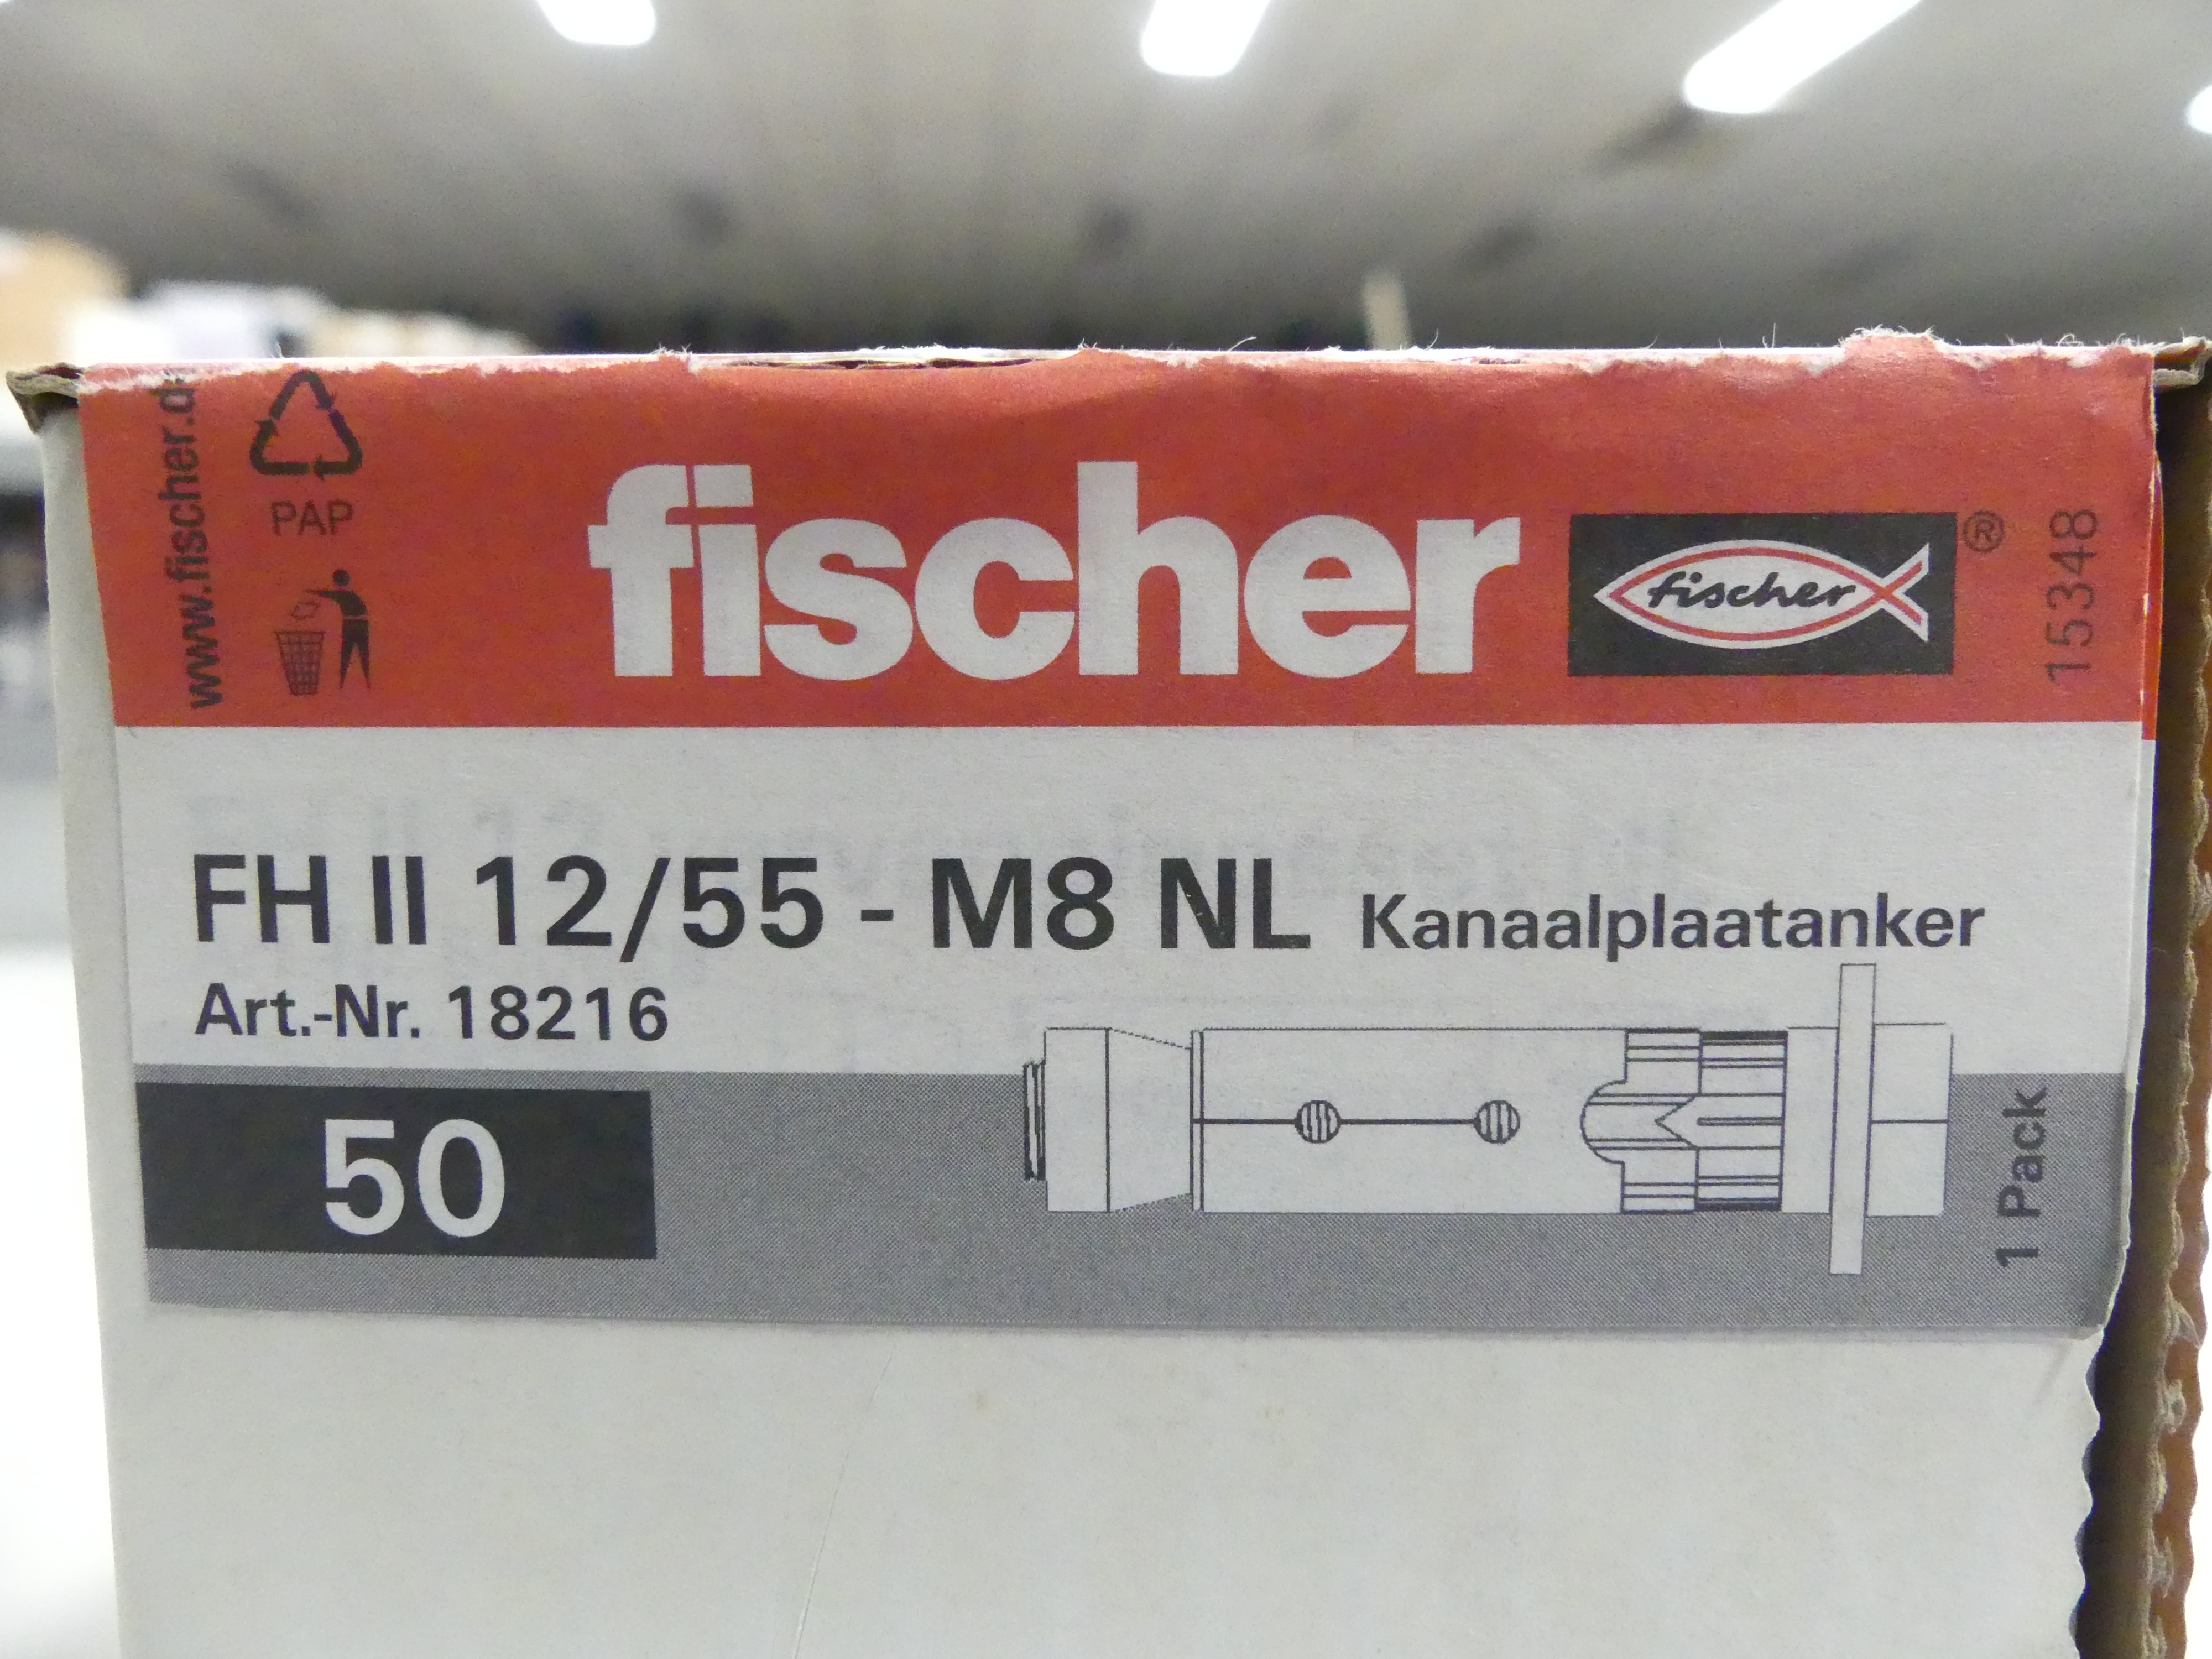 1x50 stuks Fischer kanaalplaatankers FH II 12/55 - M8 NL  